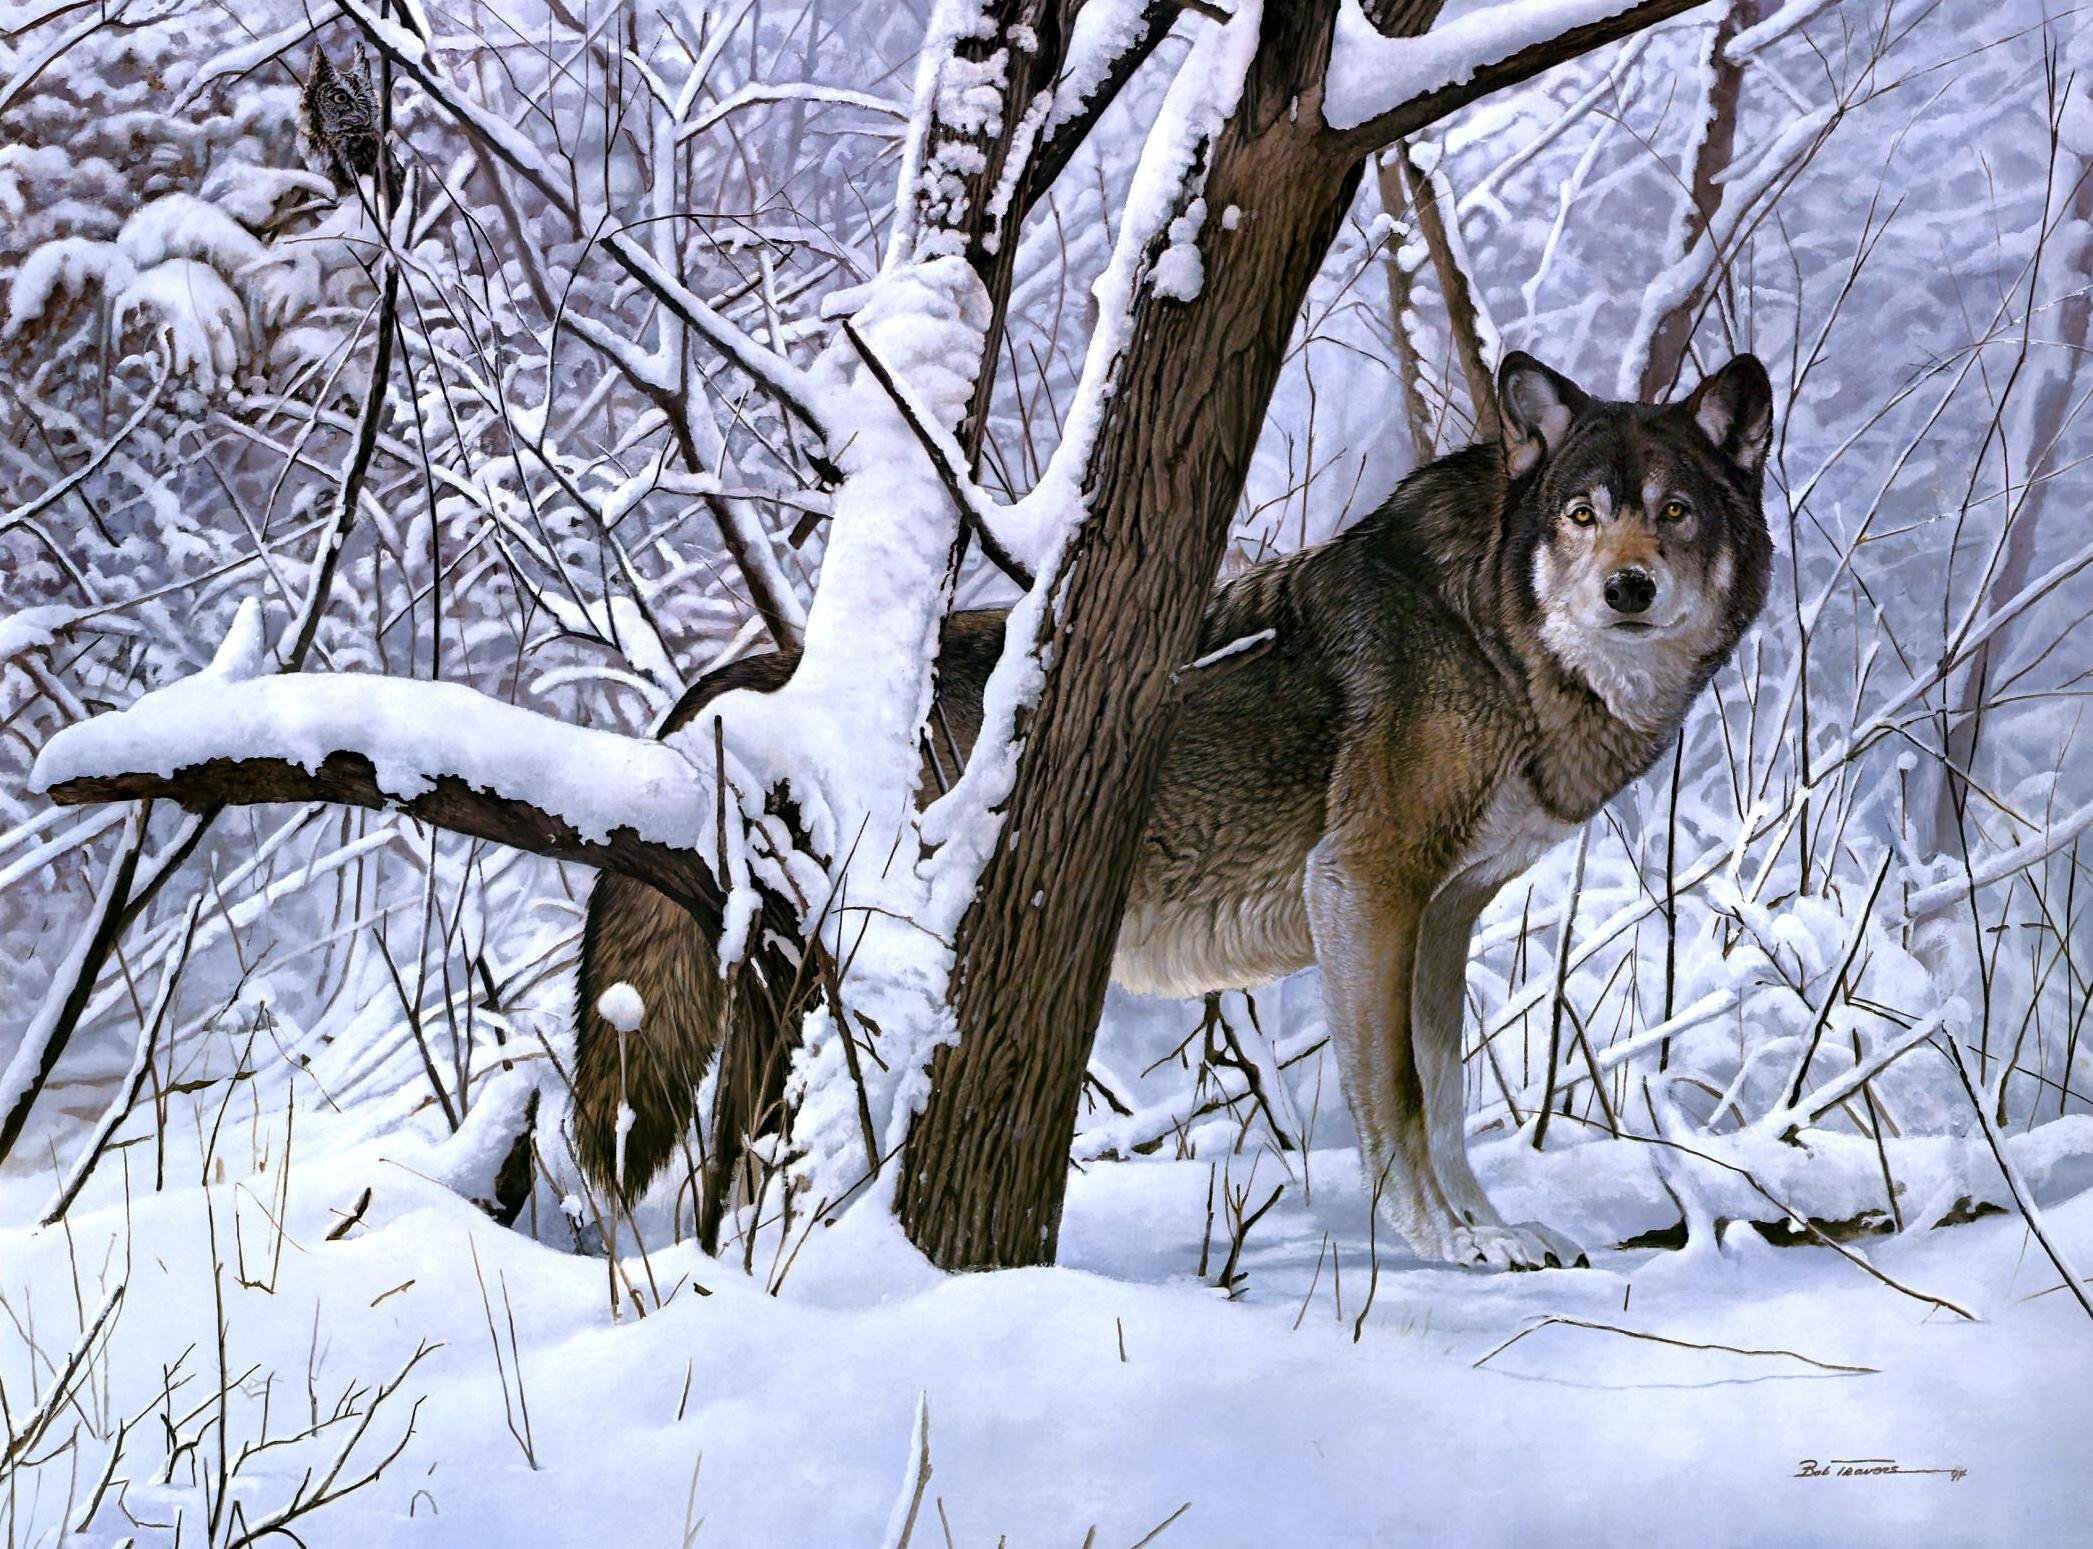 Описание картины серый волк. Жизнь животных зимой. Зимующие животные. Дикие животные в лесу зимой. Зимующие Дикие животные.